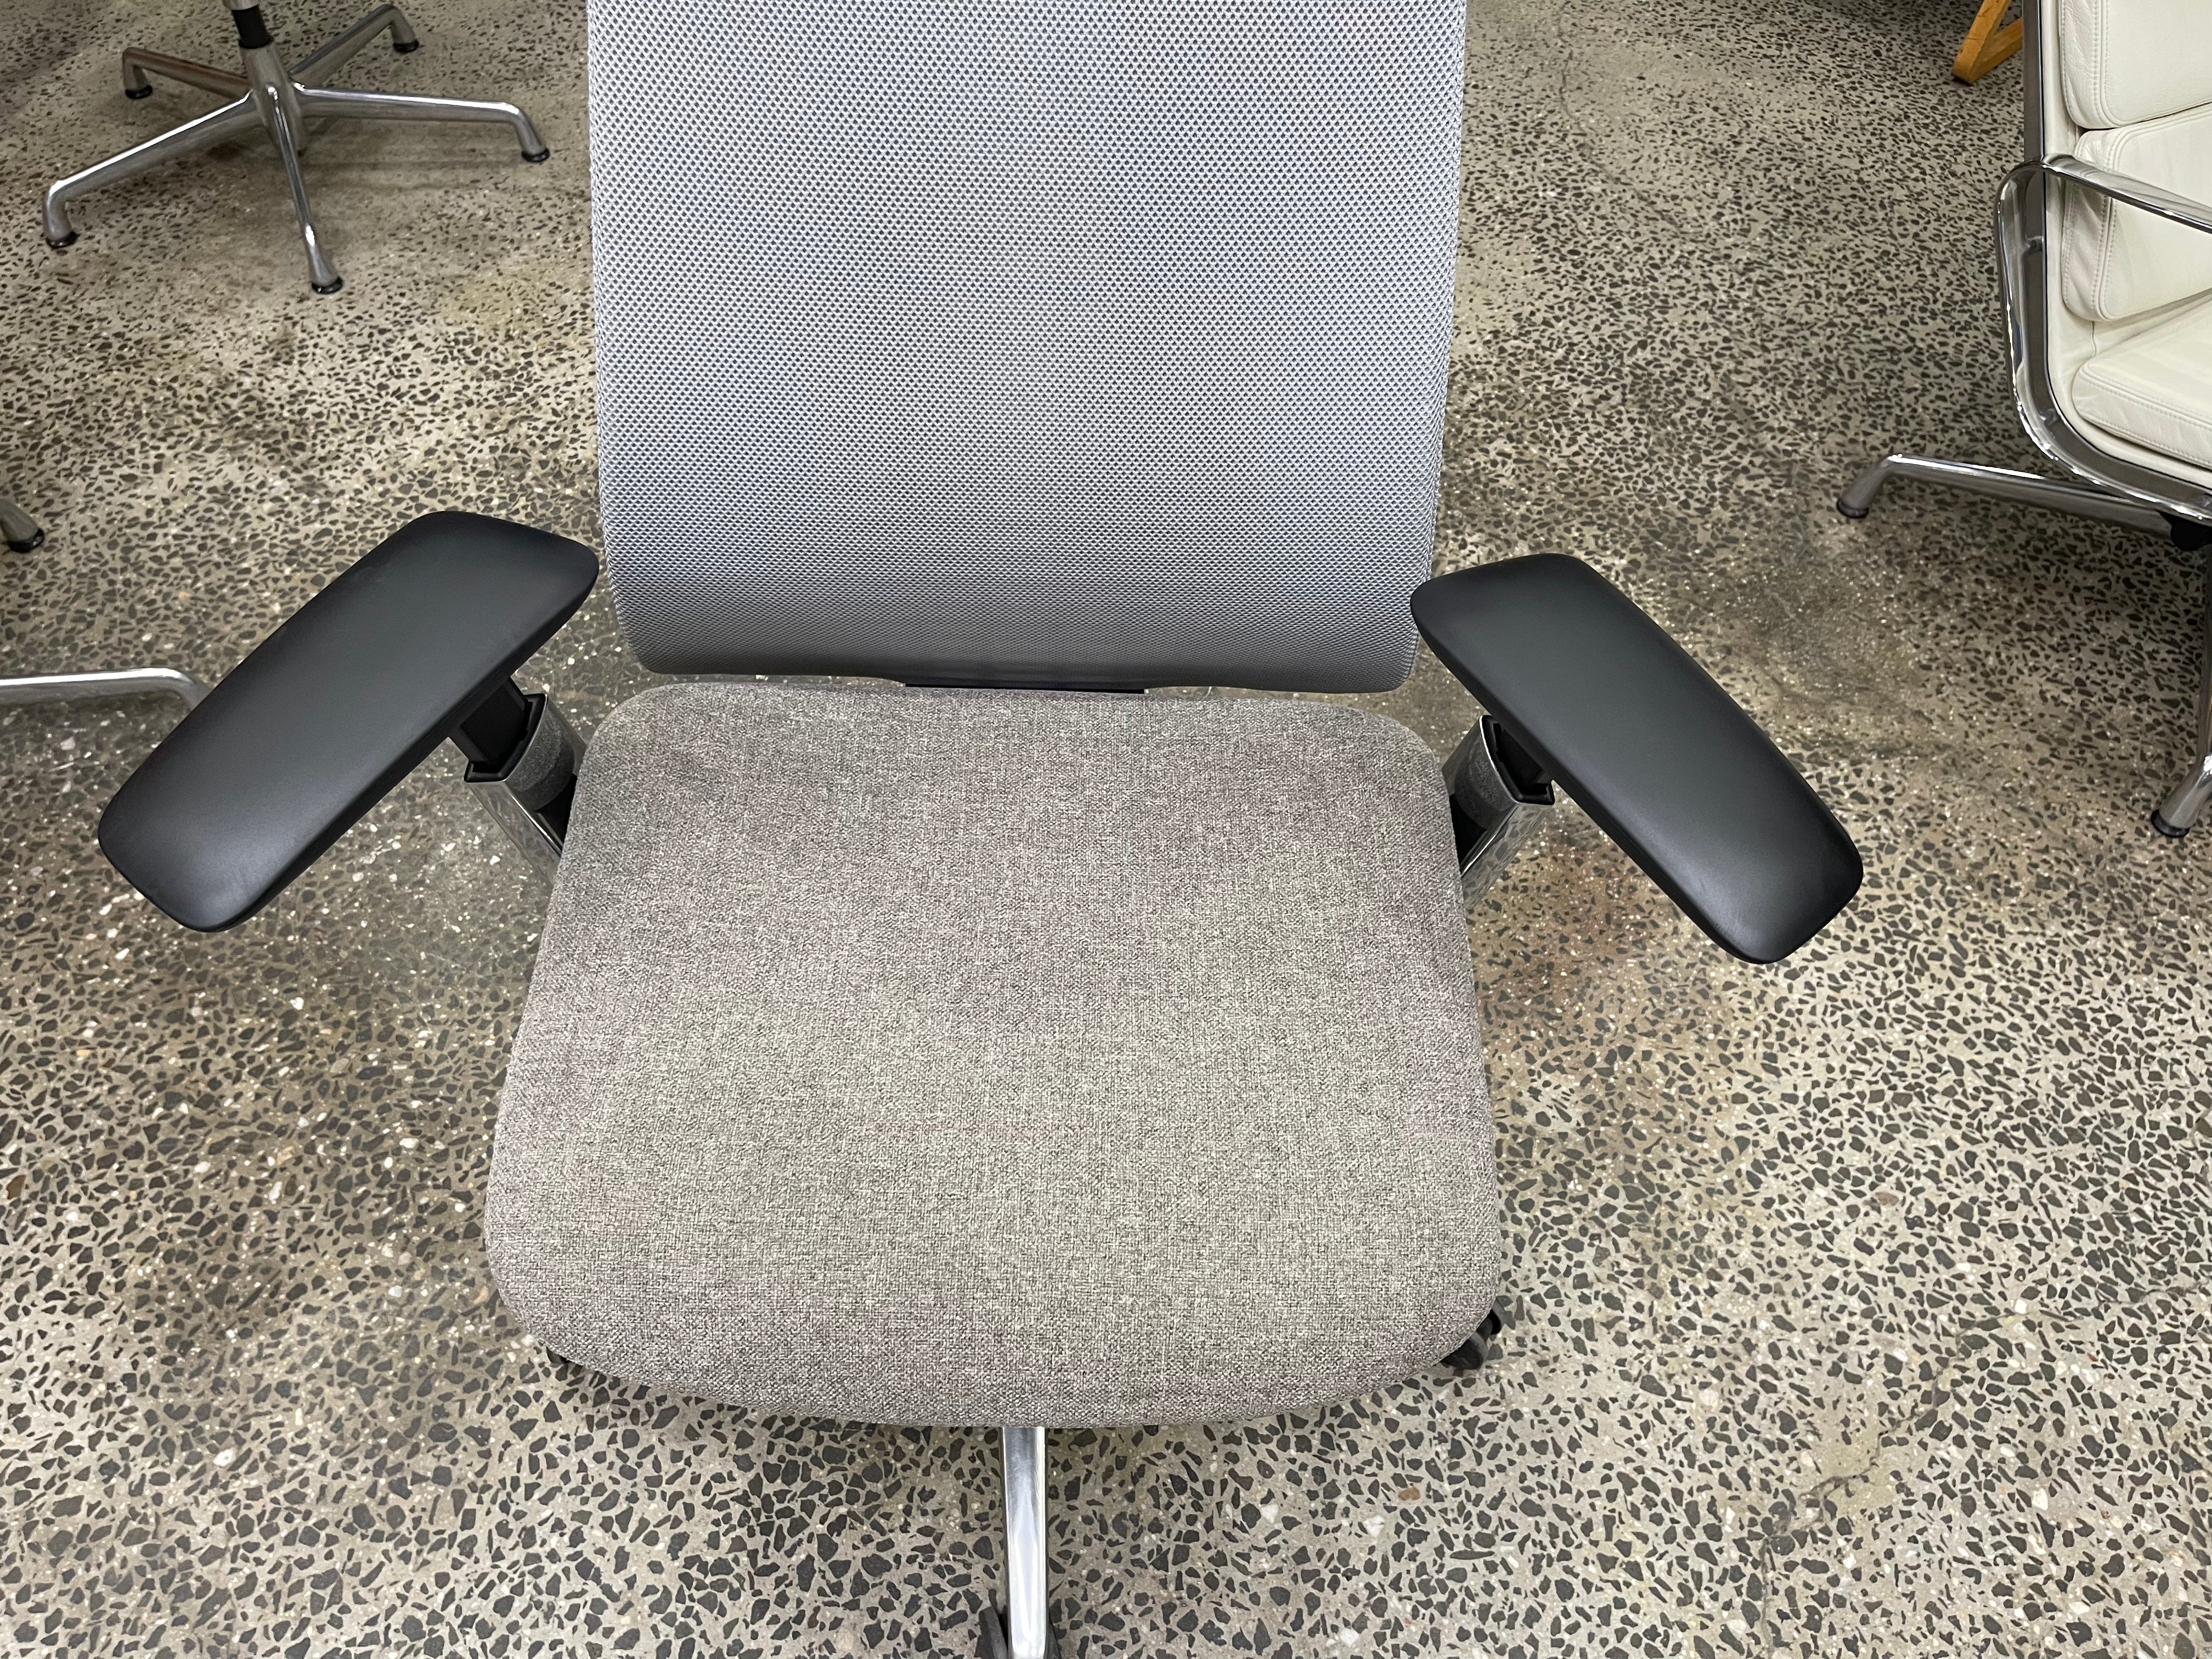 Haworth FERN Ergonomic Chair w/ Danish KVADRAT Wool Seat